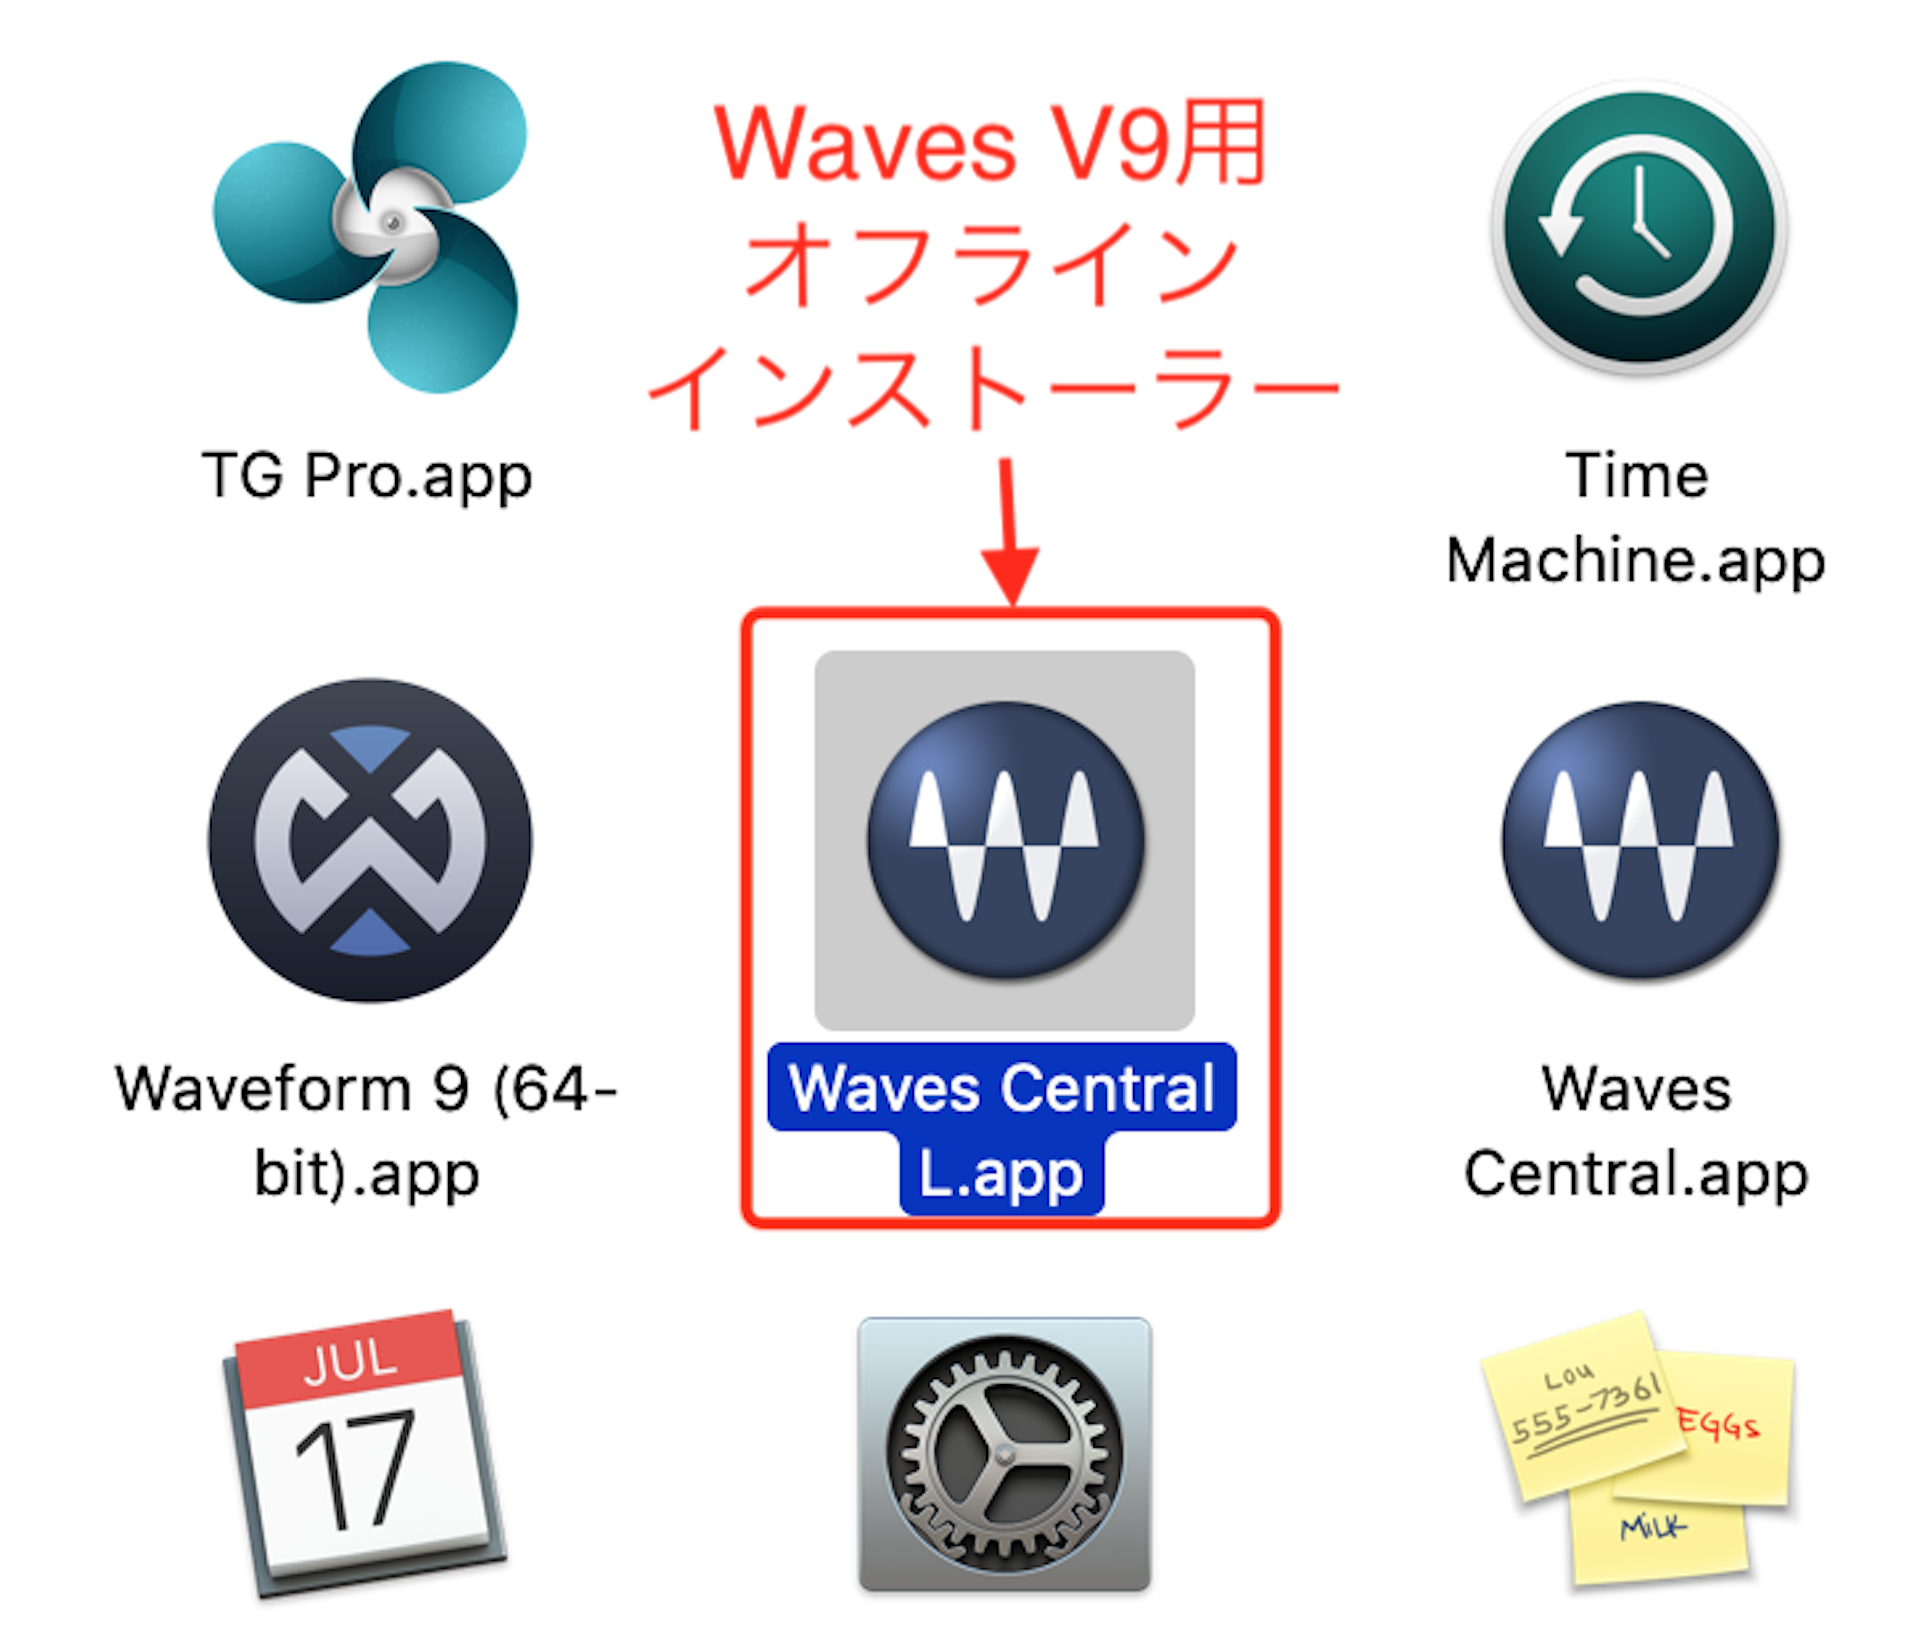 waves central v9